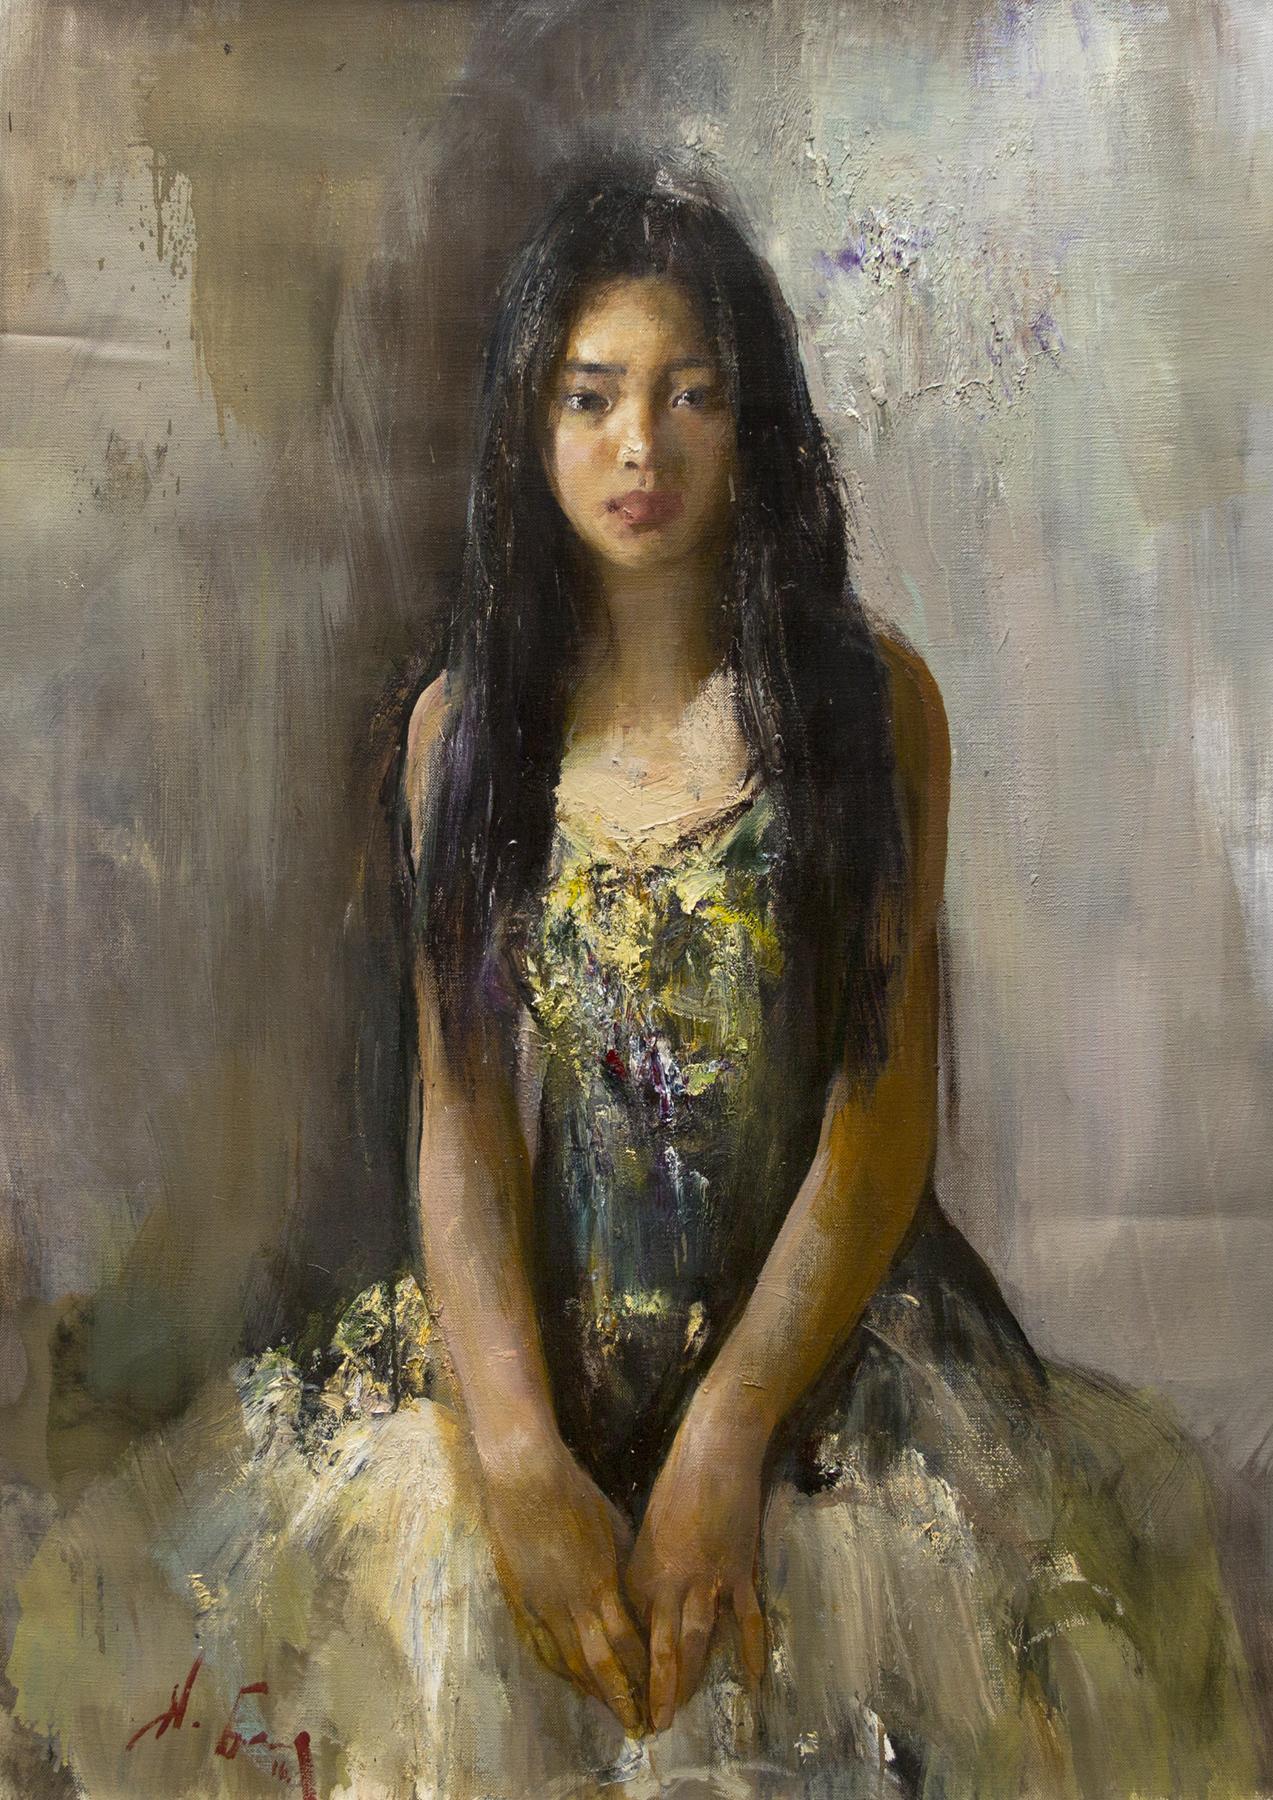 Chinese girl. Original modern art painting